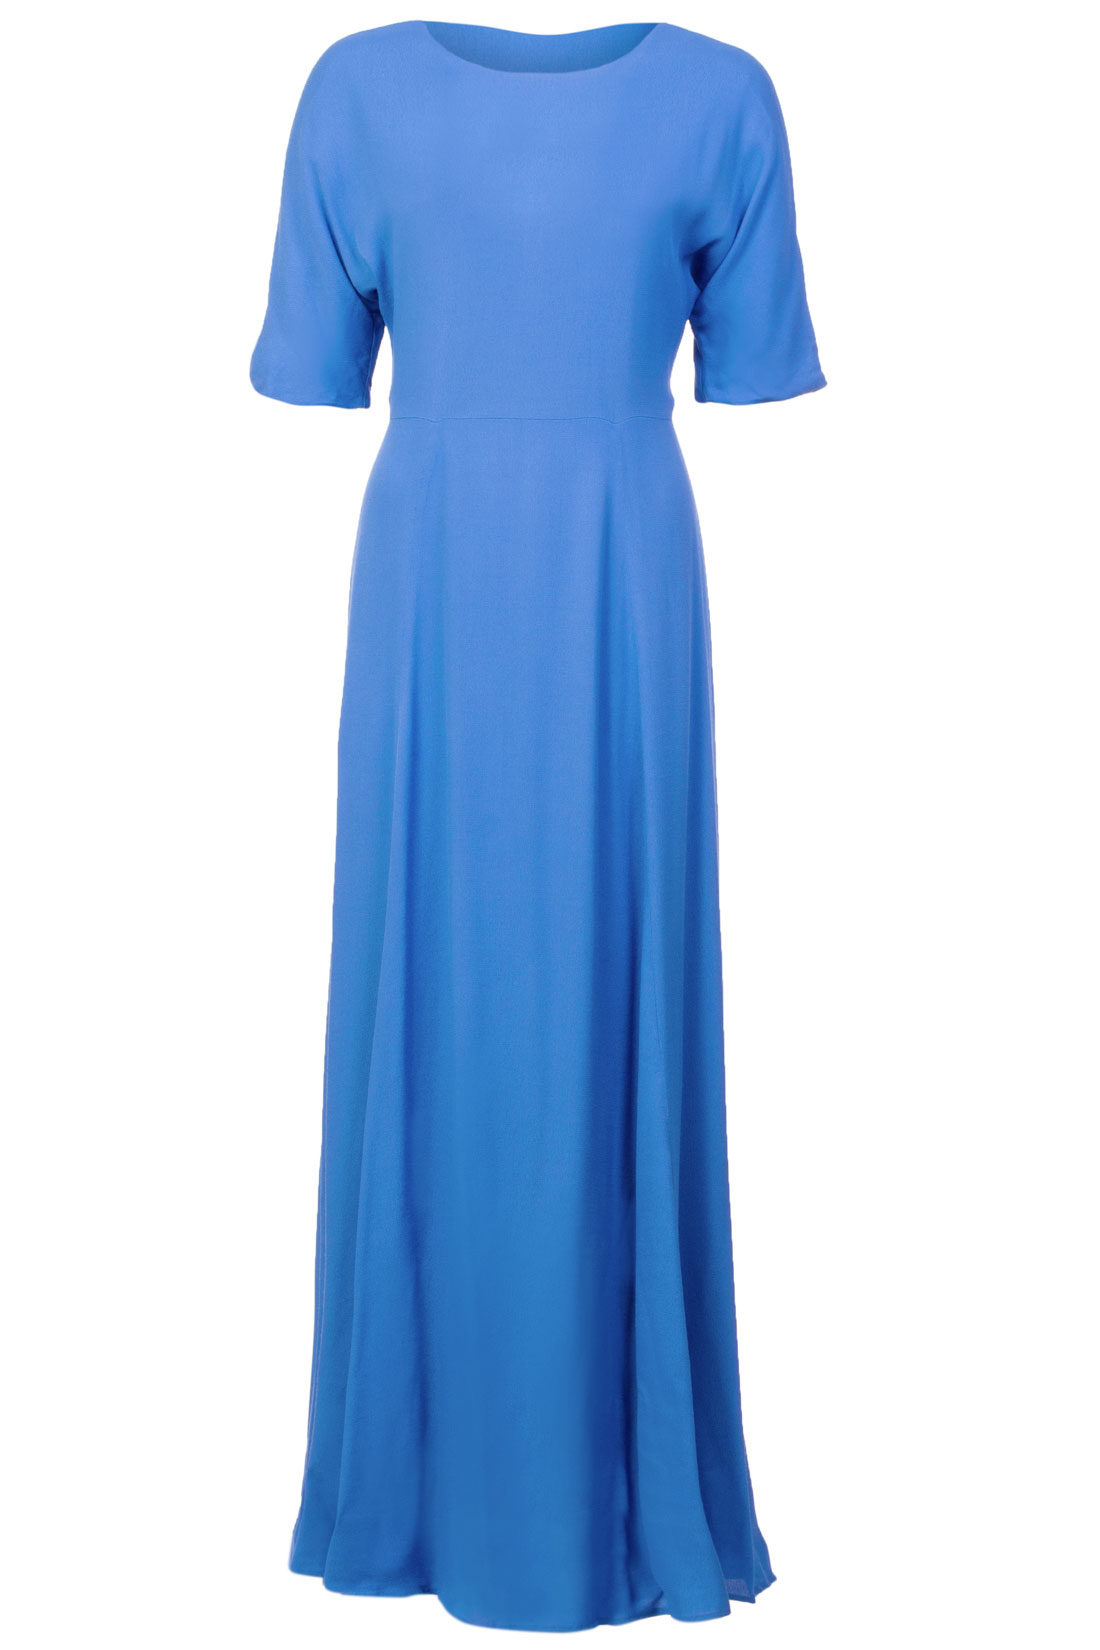 Платье с вырезом на спине (арт. baon B457025), размер S, цвет синий Платье с вырезом на спине (арт. baon B457025) - фото 4